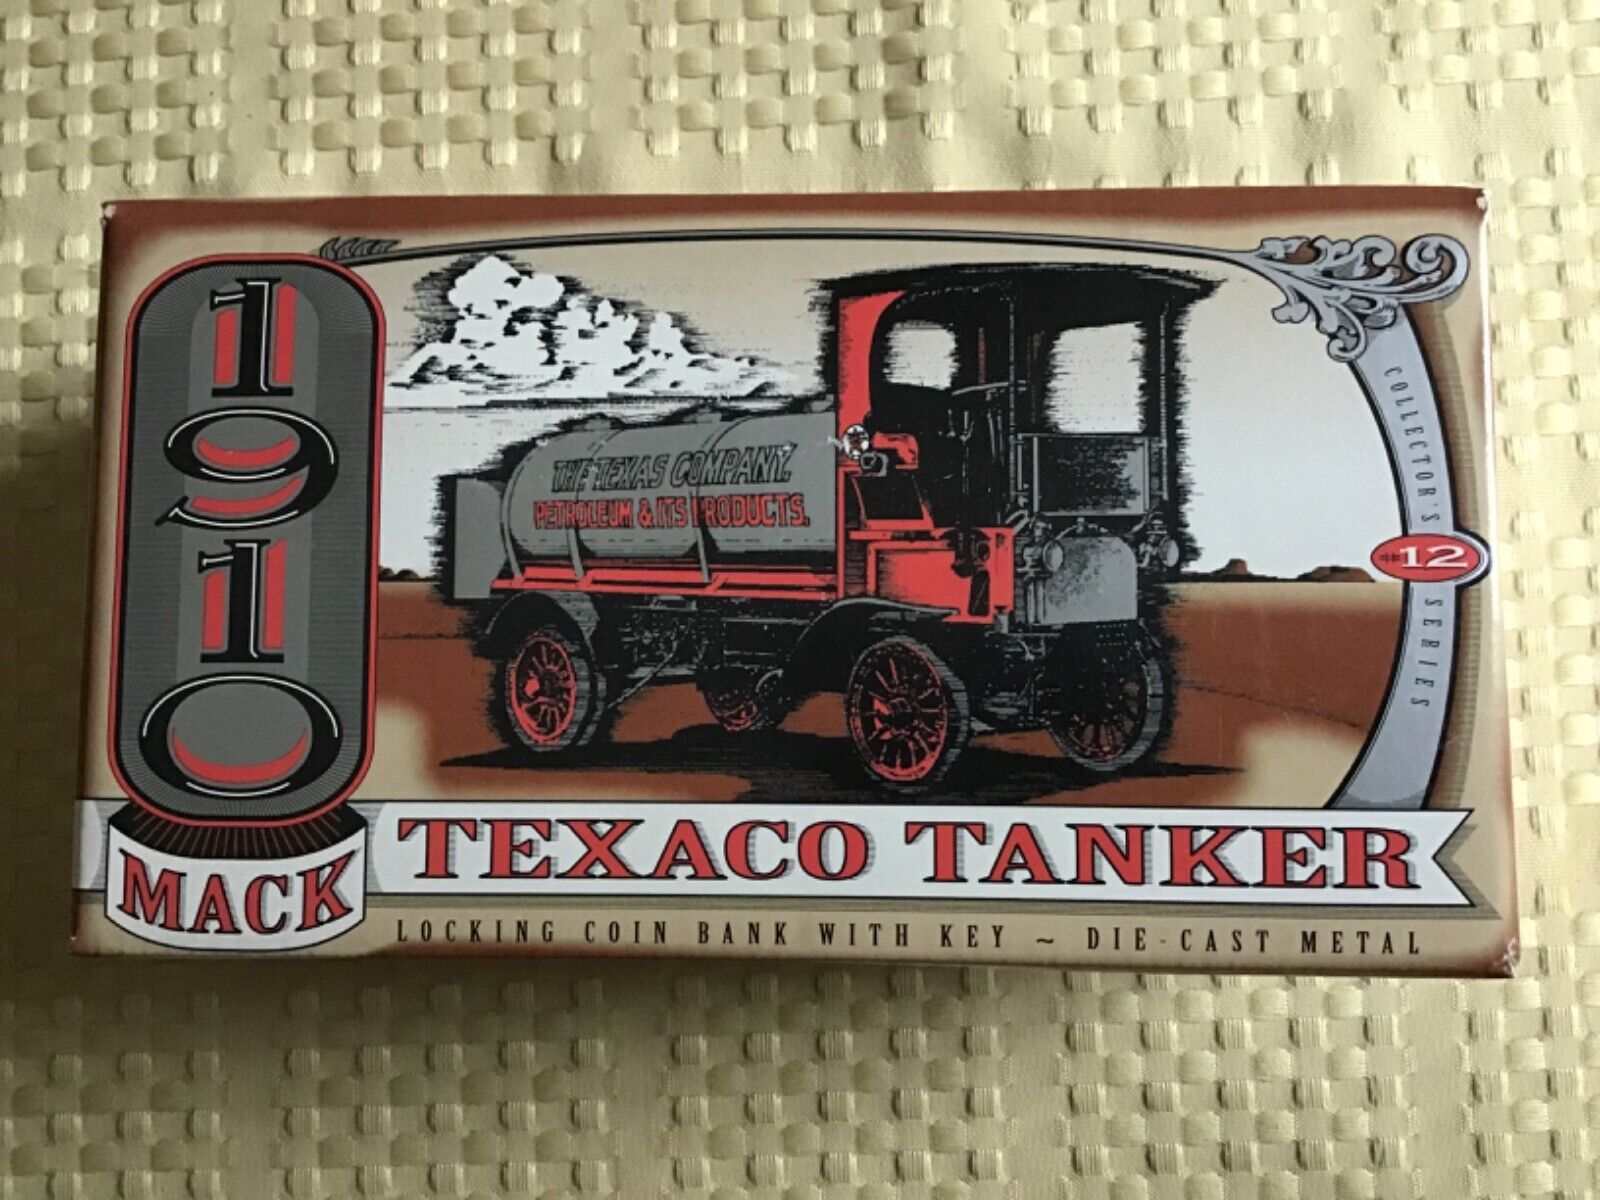 1910 Mack Texaco Tanker